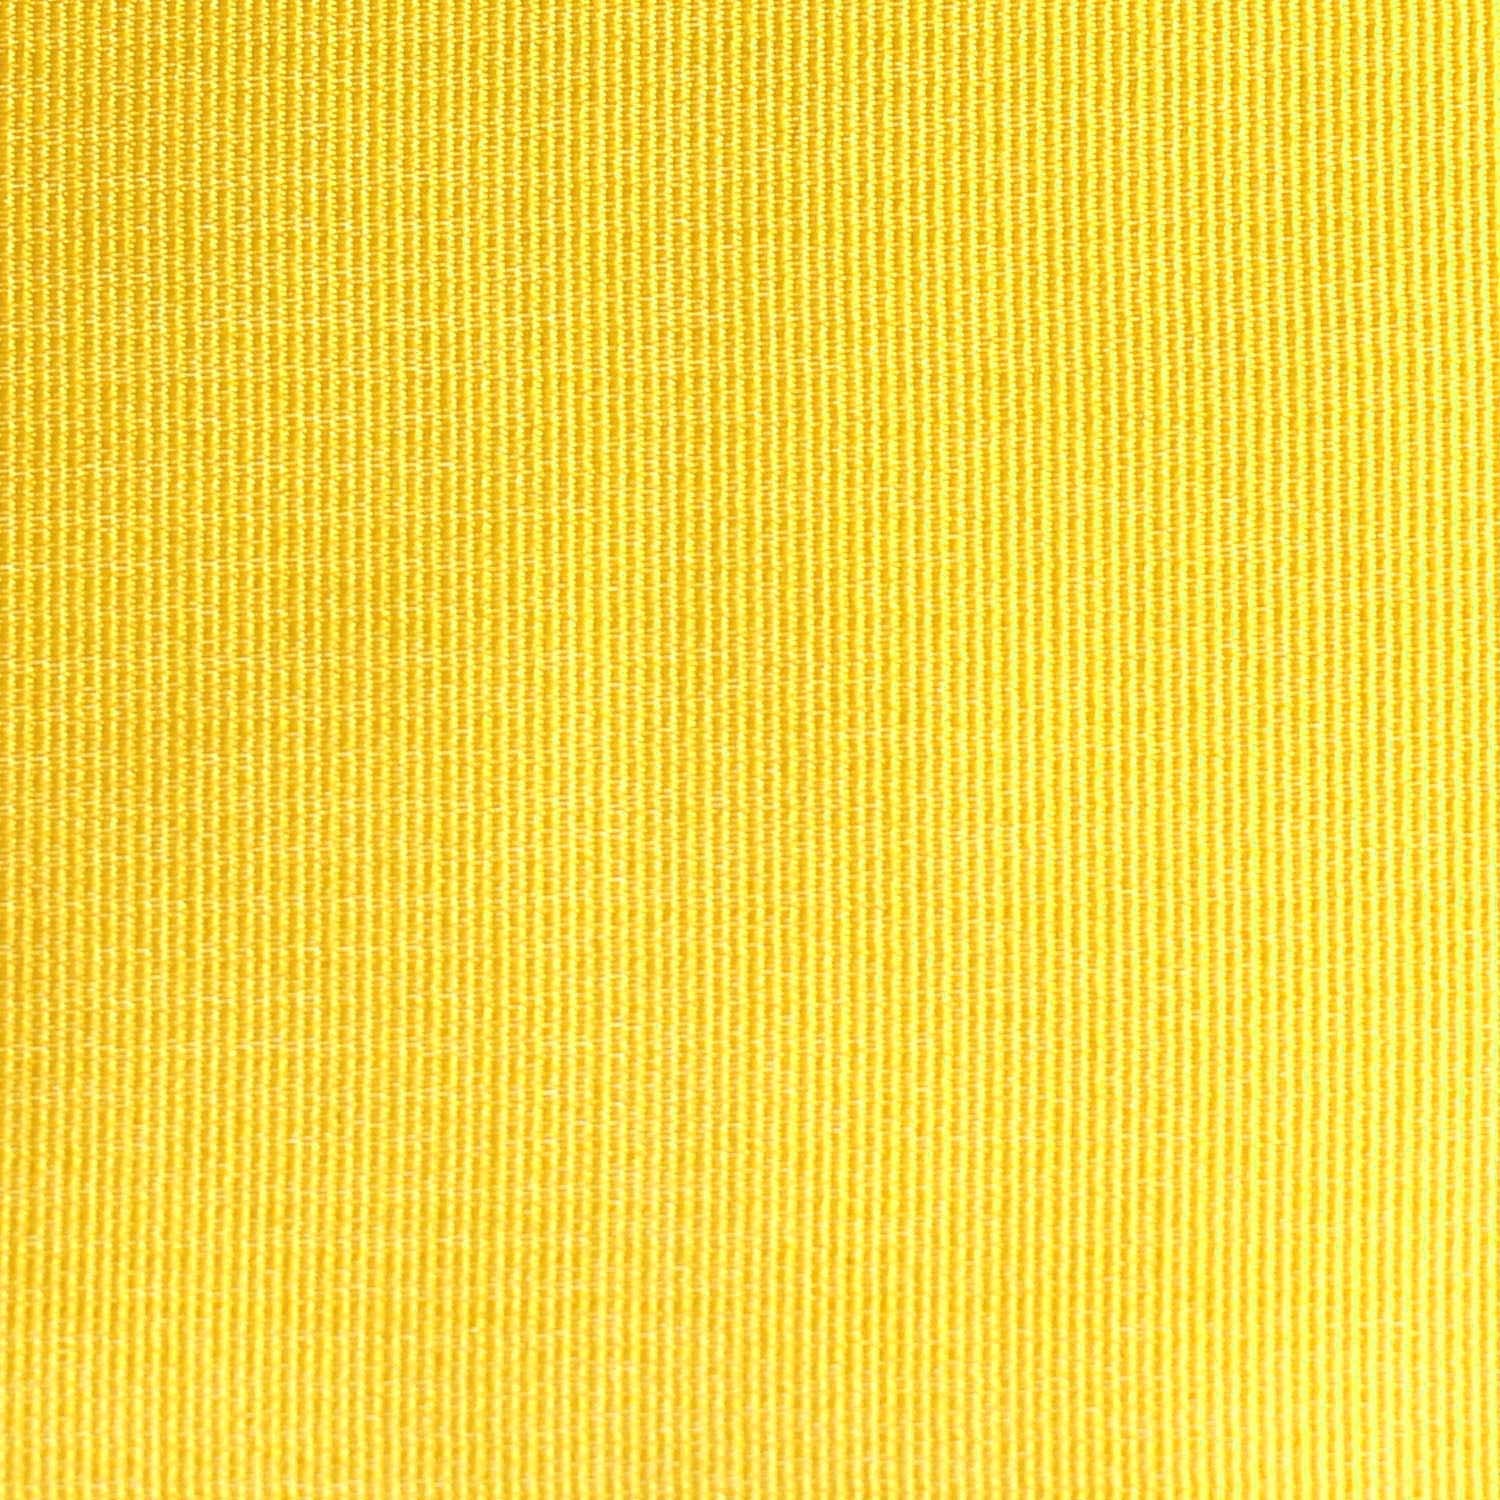 Banana Yellow Fabric Self Tie Diamond Tip Bow TieX079